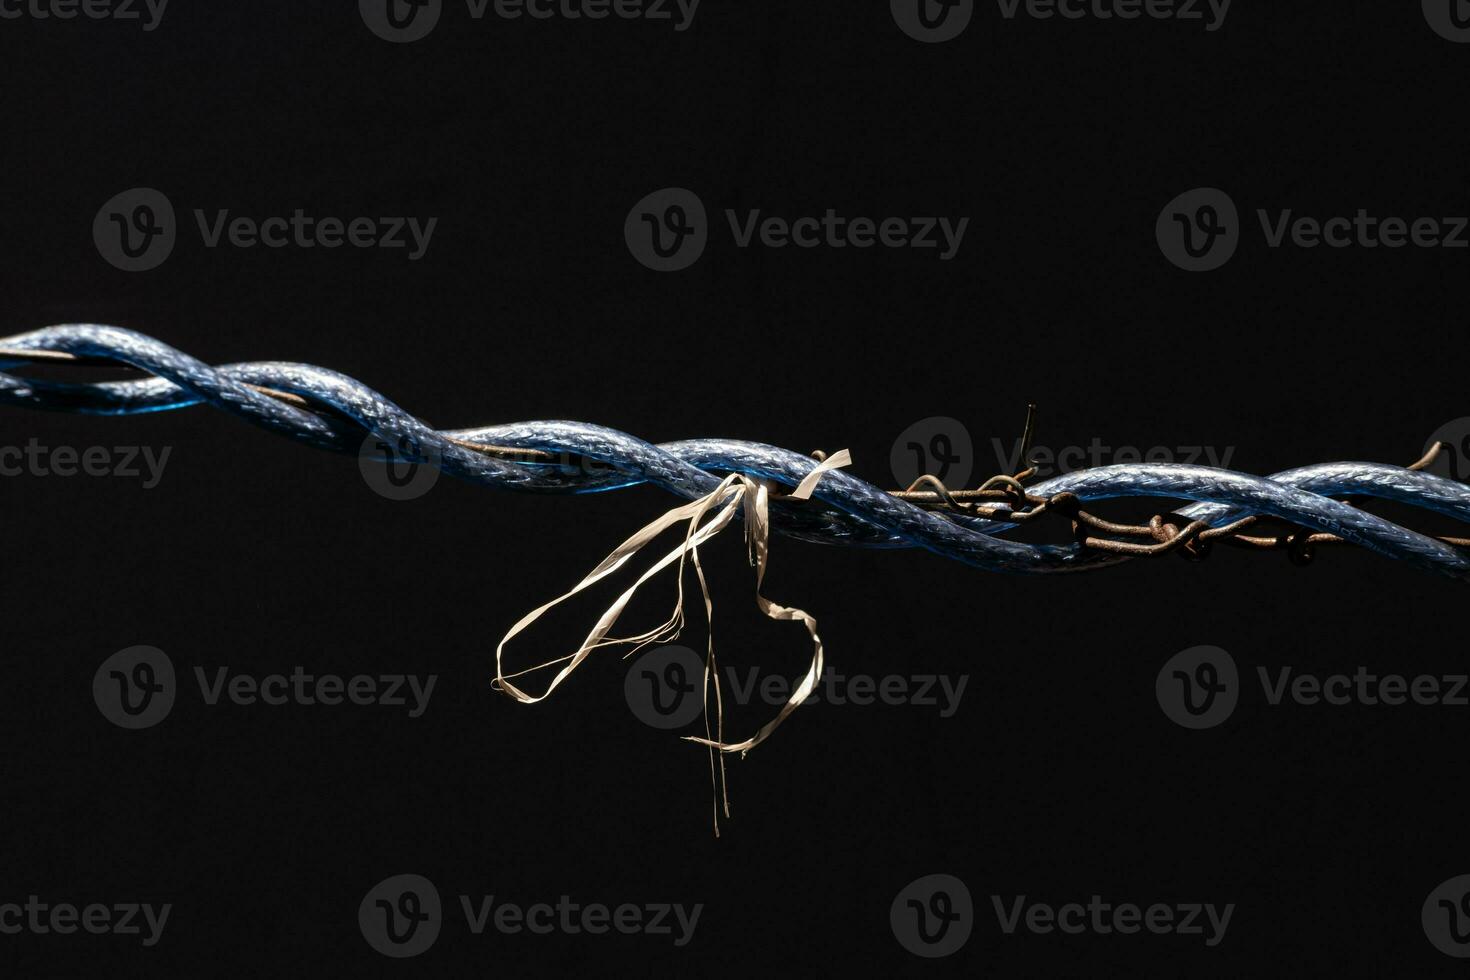 Laos el secado ropa con alambres enredado alrededor y atado con cuerdas, creando un extraño imagen en oscuro tonos foto